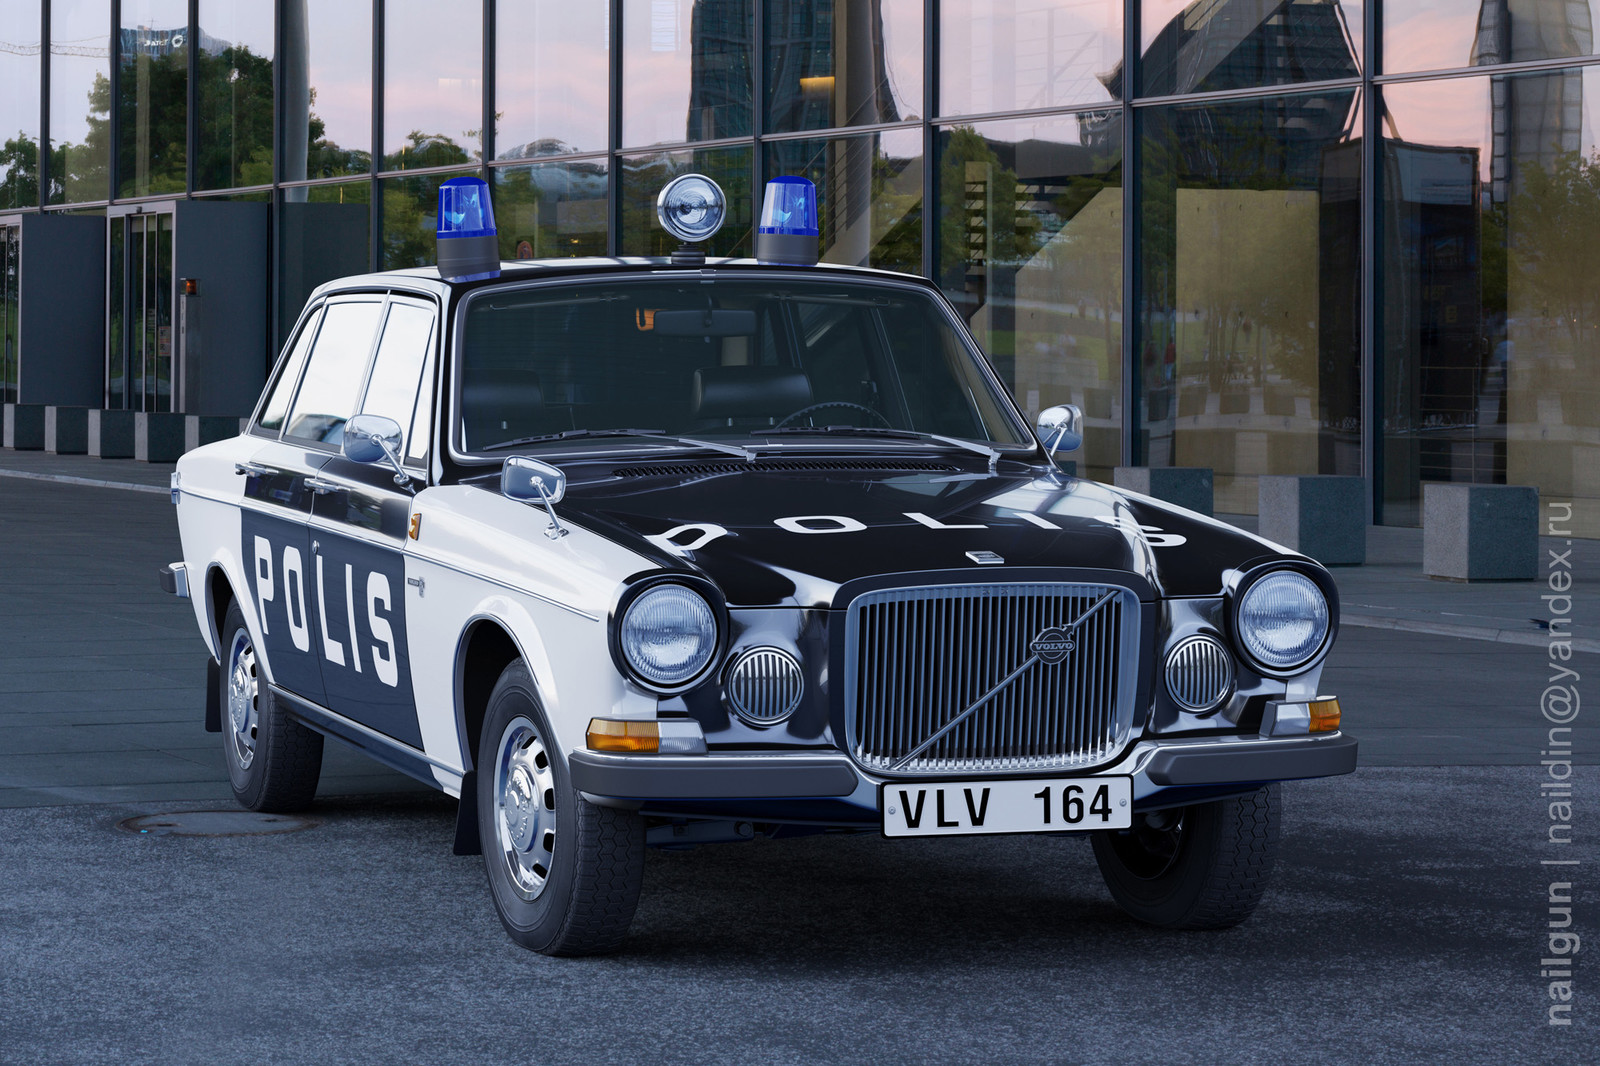 Police Sweden